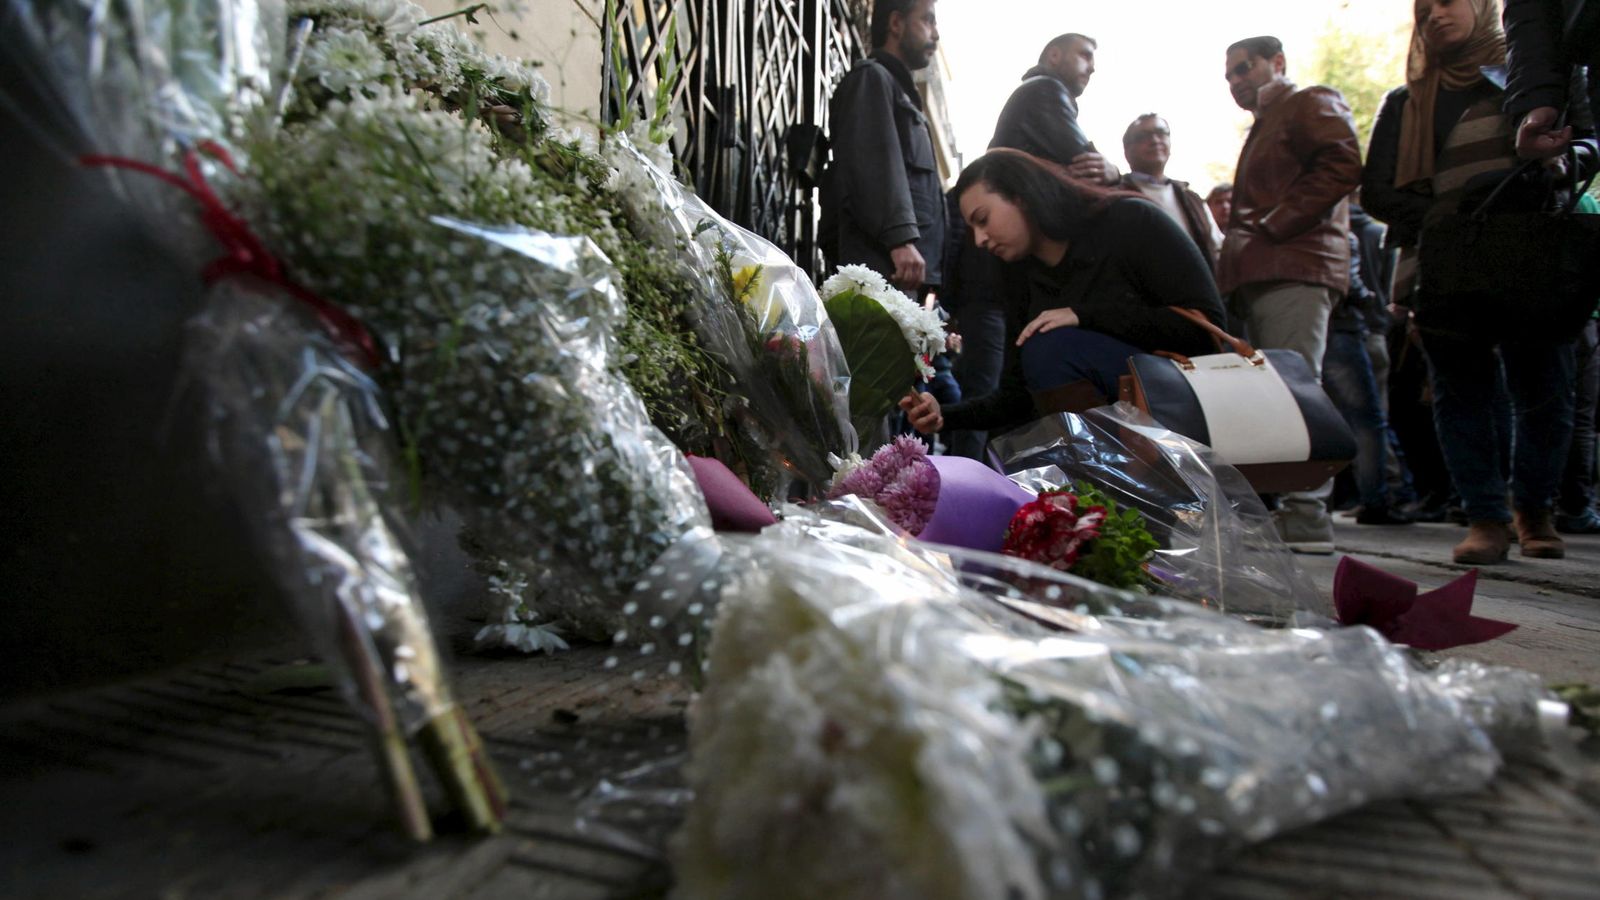 Foto: Homenaje al joven italiano asesinado Giulio Regeni ante la Embajada de Italia en El Cairo, el 6 de febrero de 2016 (Reuters).